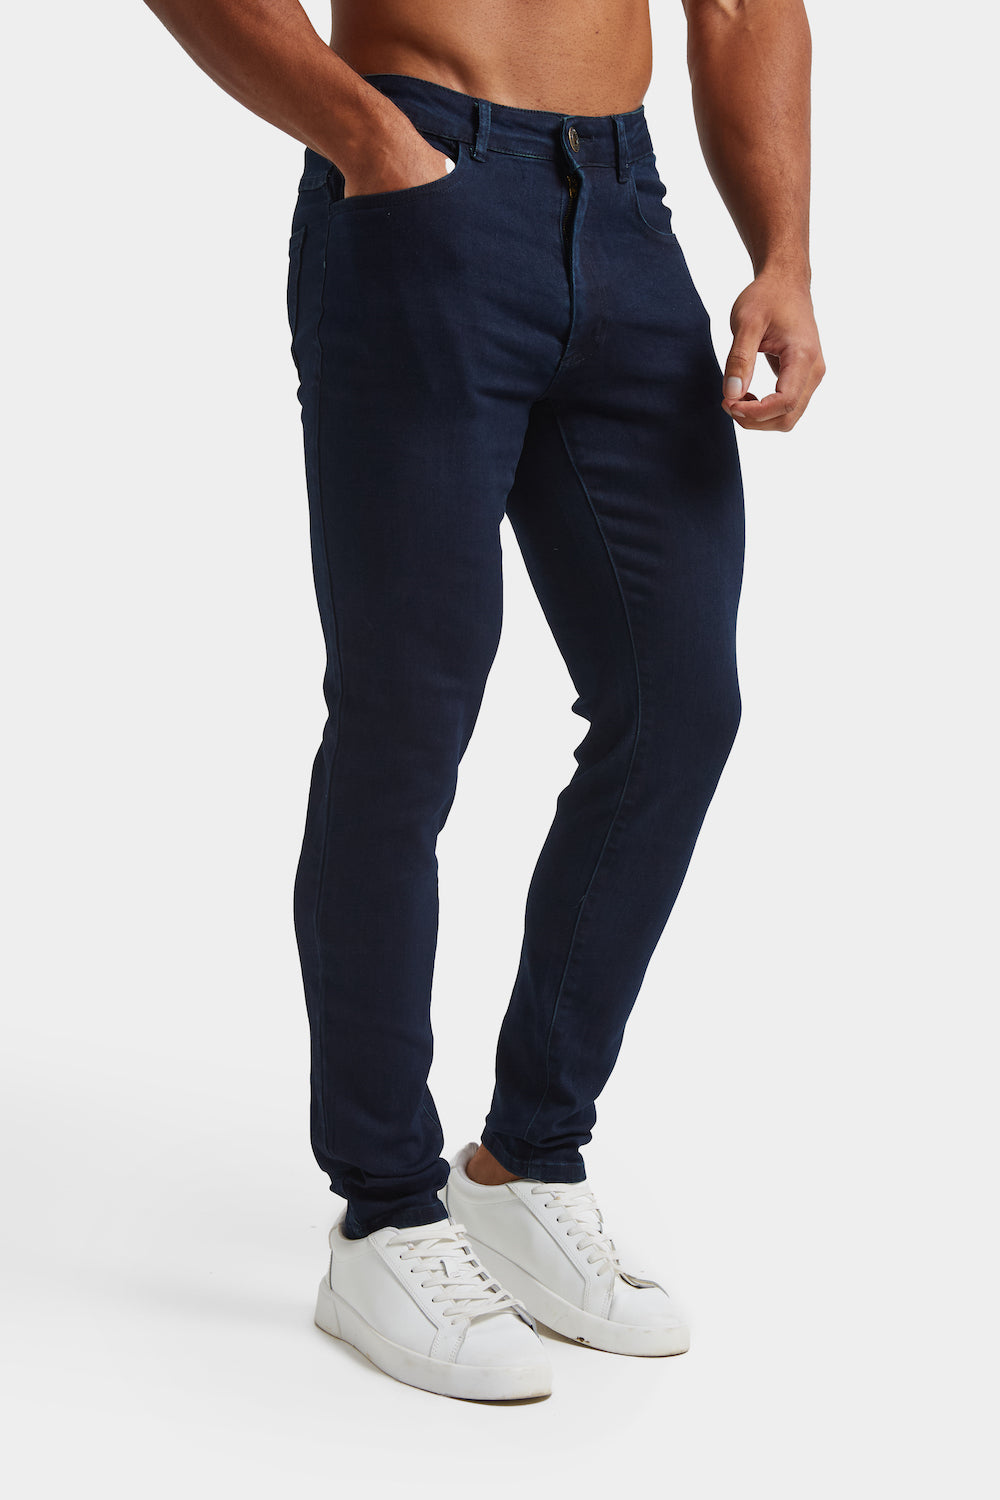 Buy Wrangler Men's Solid Indigo Jeans (Regular) | Wrangler® India Official  Online Store